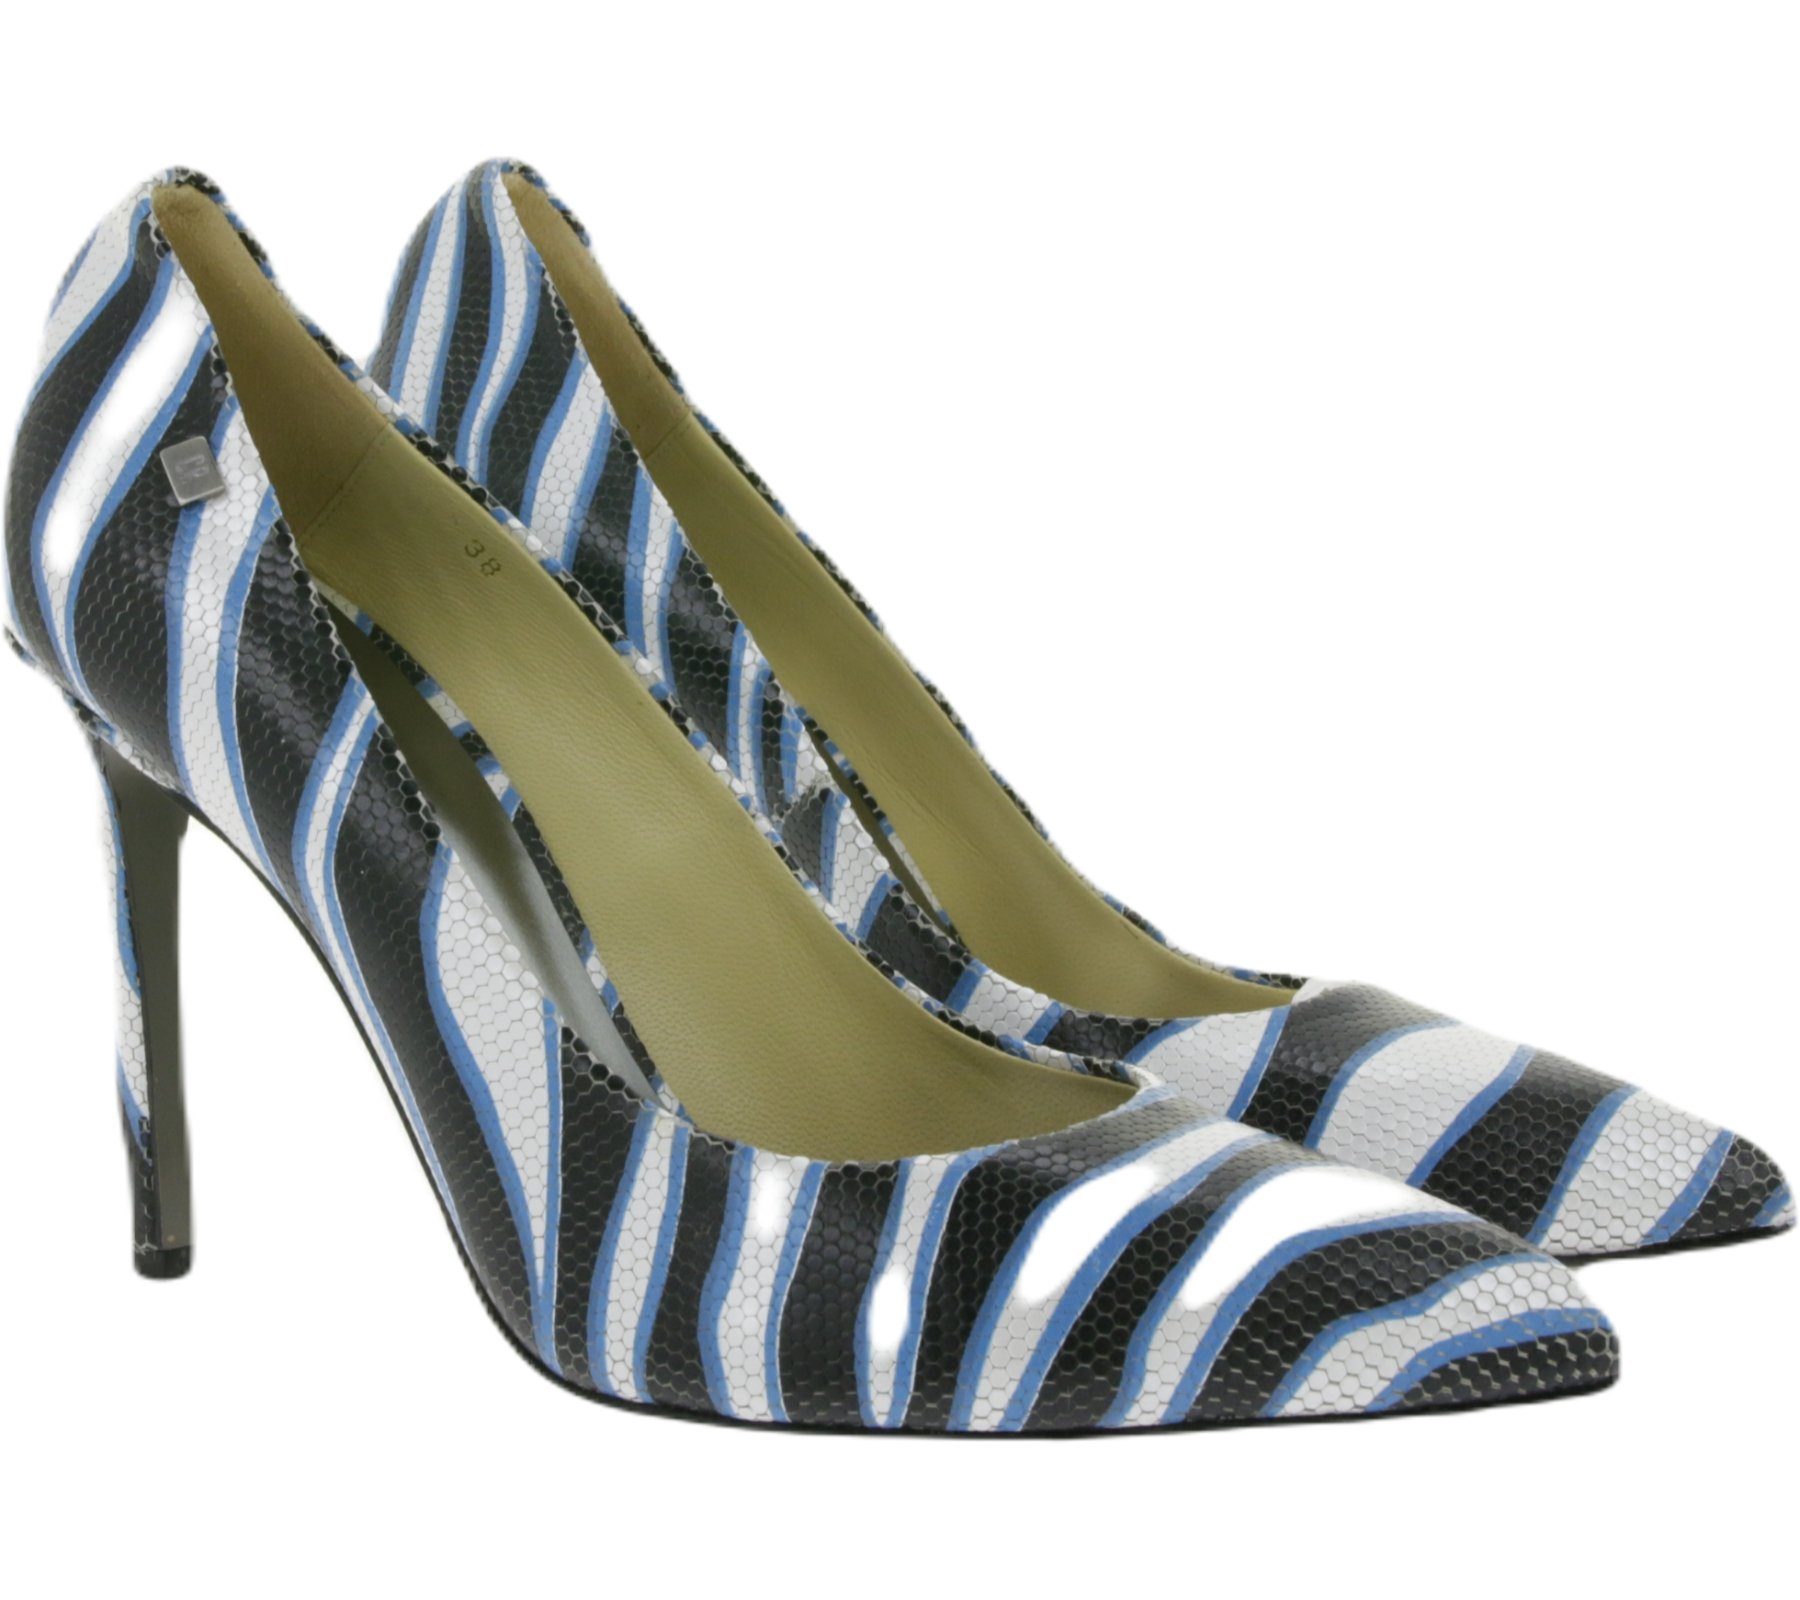 CR7 CR7 CRISTIANO RONALDO Tango Damen Echtleder Stilettos mit Zebra-Muster  Made in Portugal Absatz-Schuhe Schwarz/Weiß/Blau Pumps